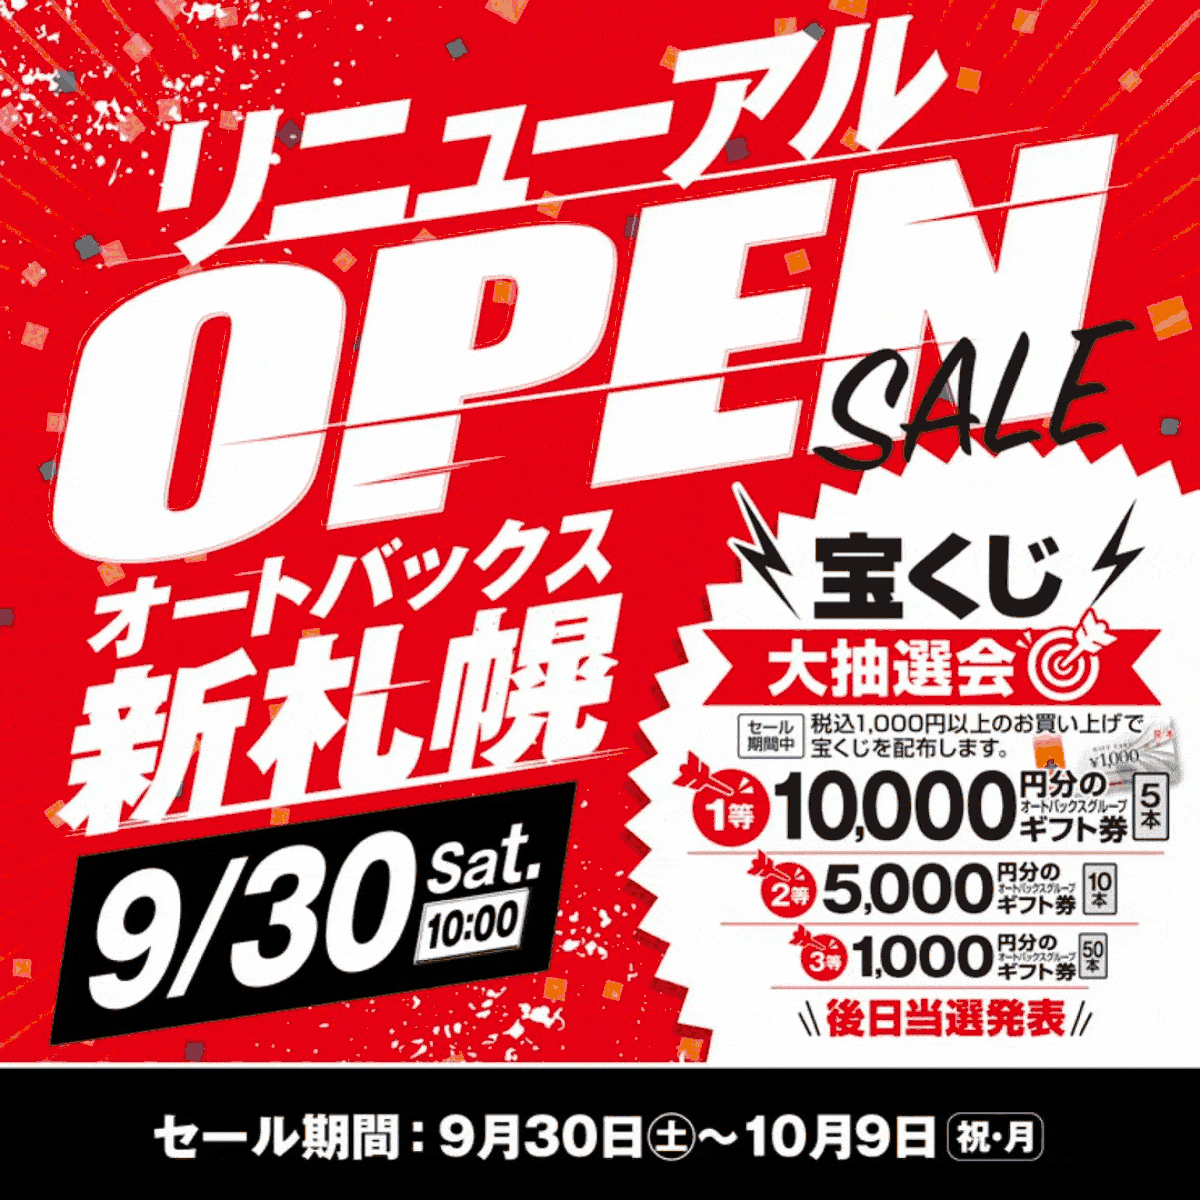 【9/30 Re:OPEN】オートバックス新札幌 リニューアルオープン!!【チラシ情報有り】